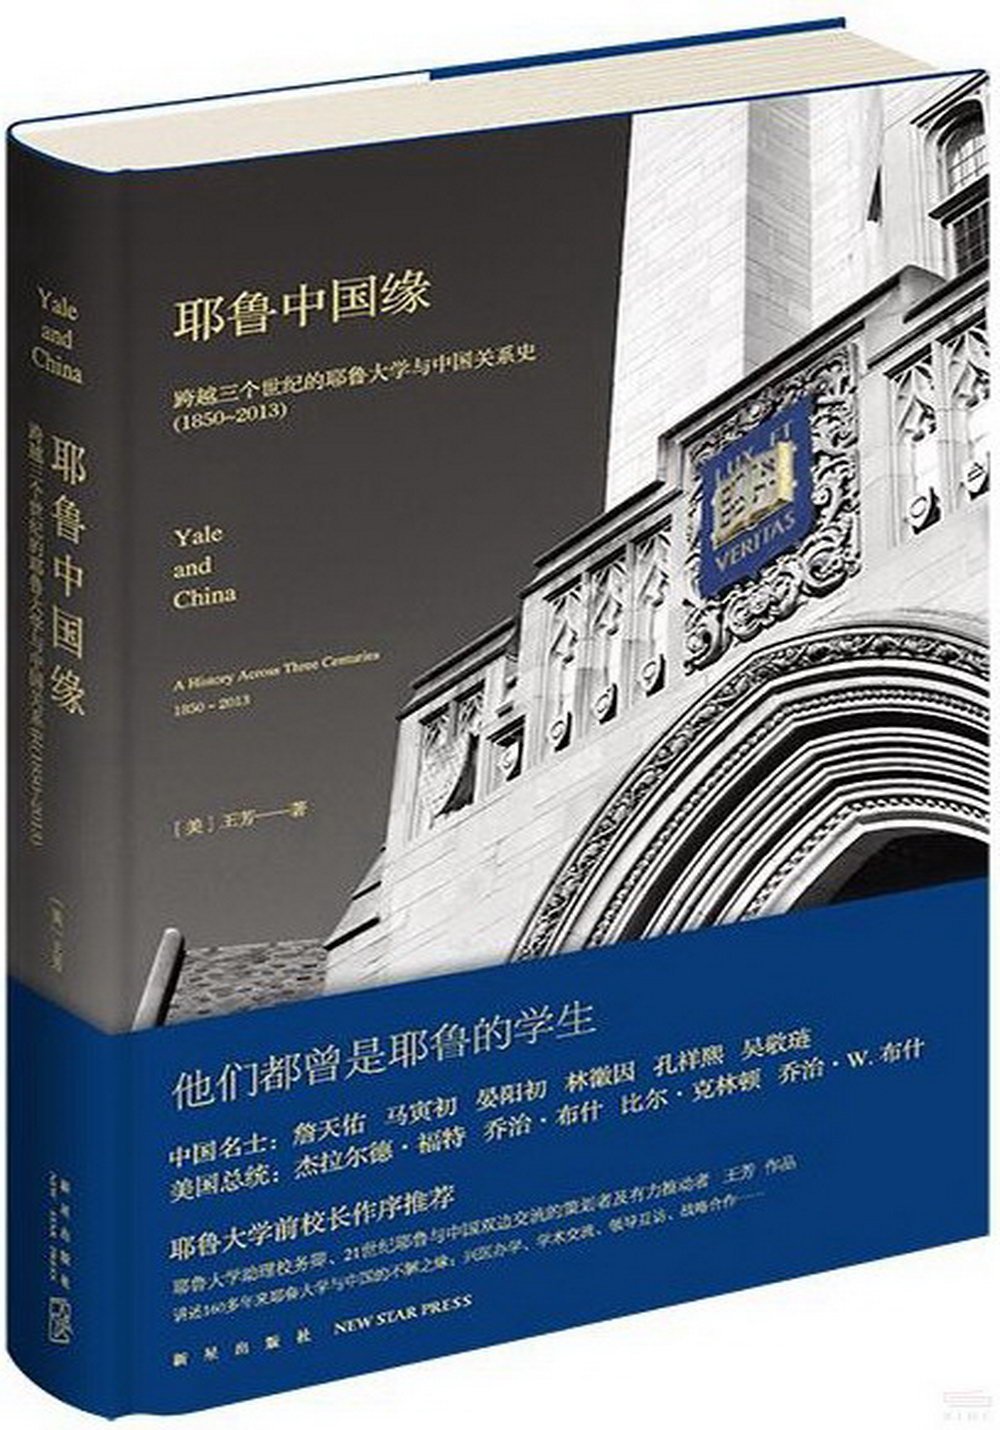 耶魯中國緣：跨越三個世紀的耶魯大學與中國關係史(1850-2013)